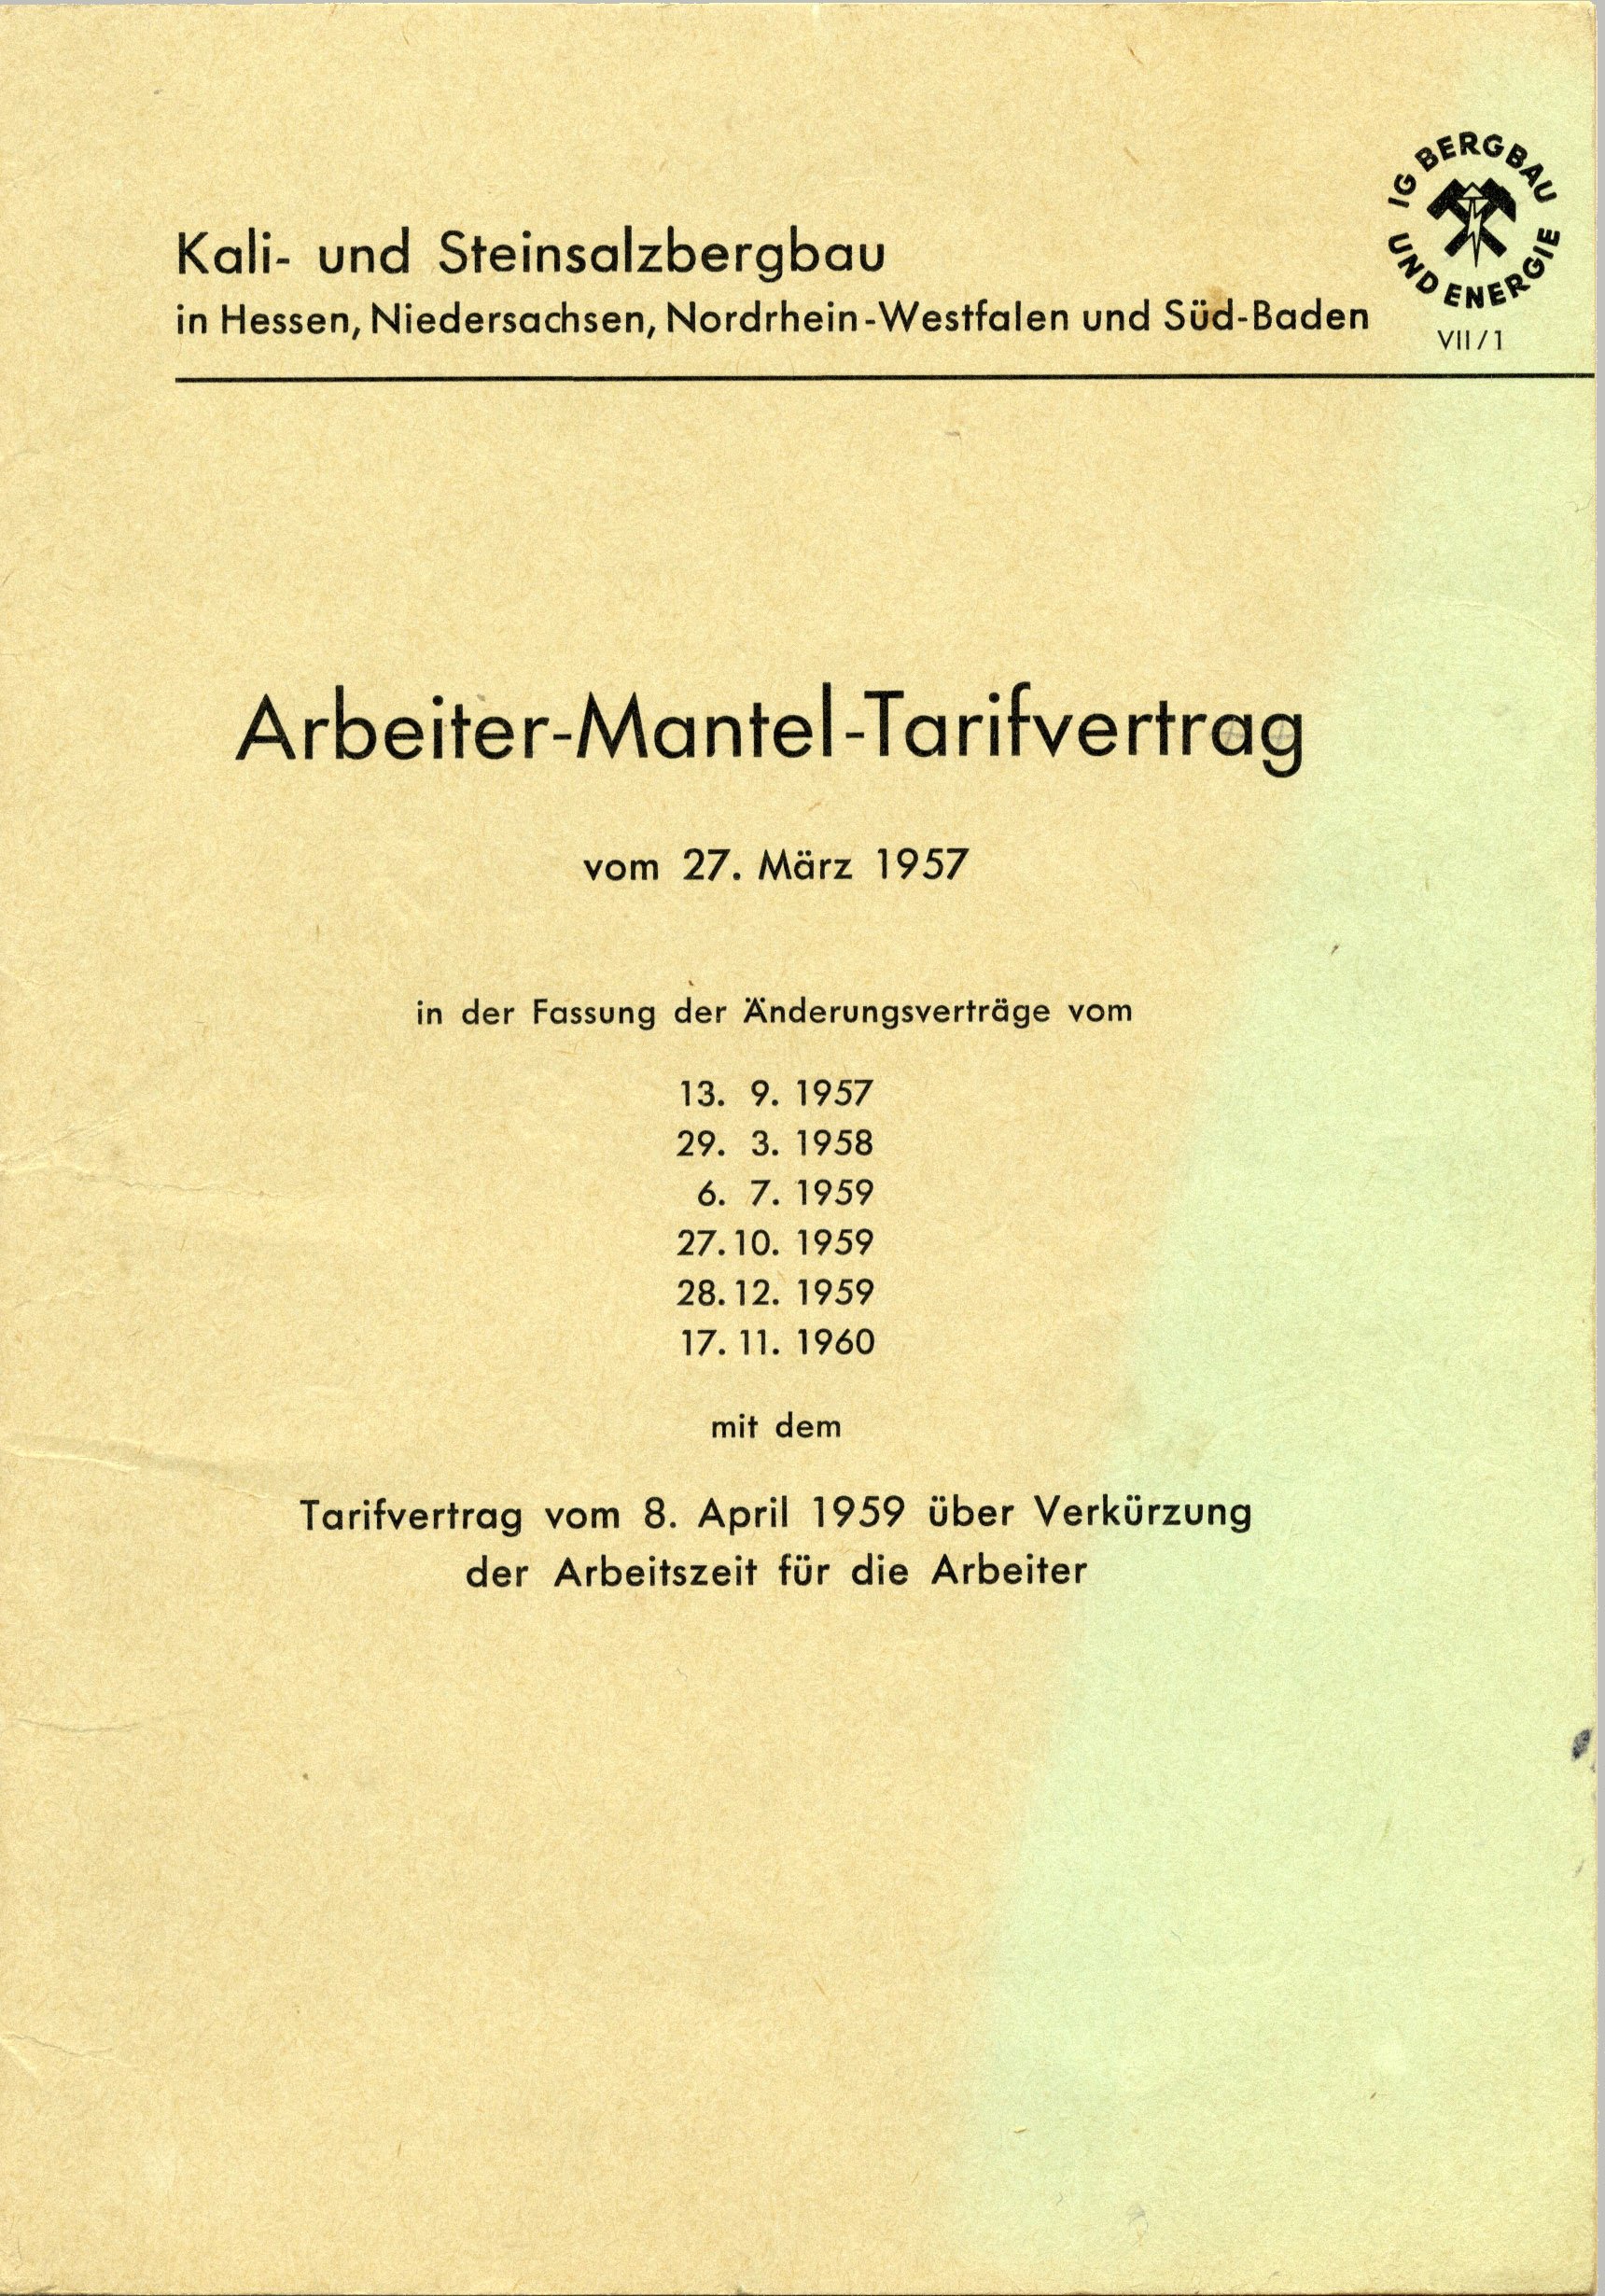 Arbeiter-Mantel-Tarifvertrag für den Kali- und Steinsalzbergbau in Hessen, Niedersachsen, Nordrhein-Westfalen und Süd-Baden in der seit dem 1. Novembe (Werra-Kalibergbau-Museum, Heringen/W. CC BY-NC-SA)